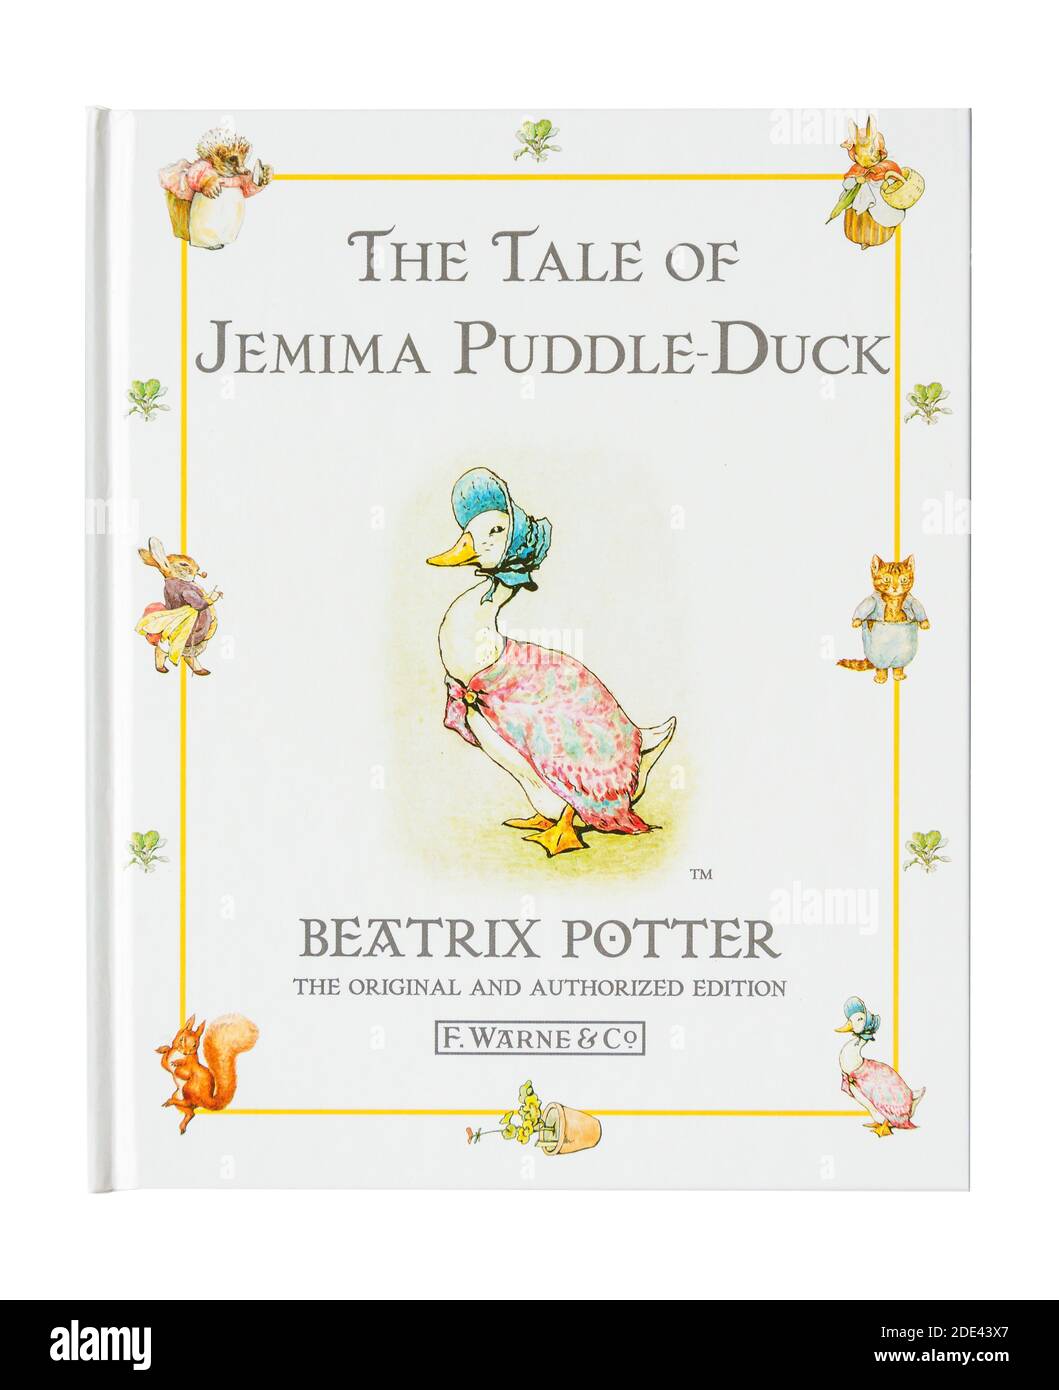 Livre pour enfants « The Tale of Jemima Puddle-Duck » de Beatrix Potter, Grand Londres, Angleterre, Royaume-Uni Banque D'Images